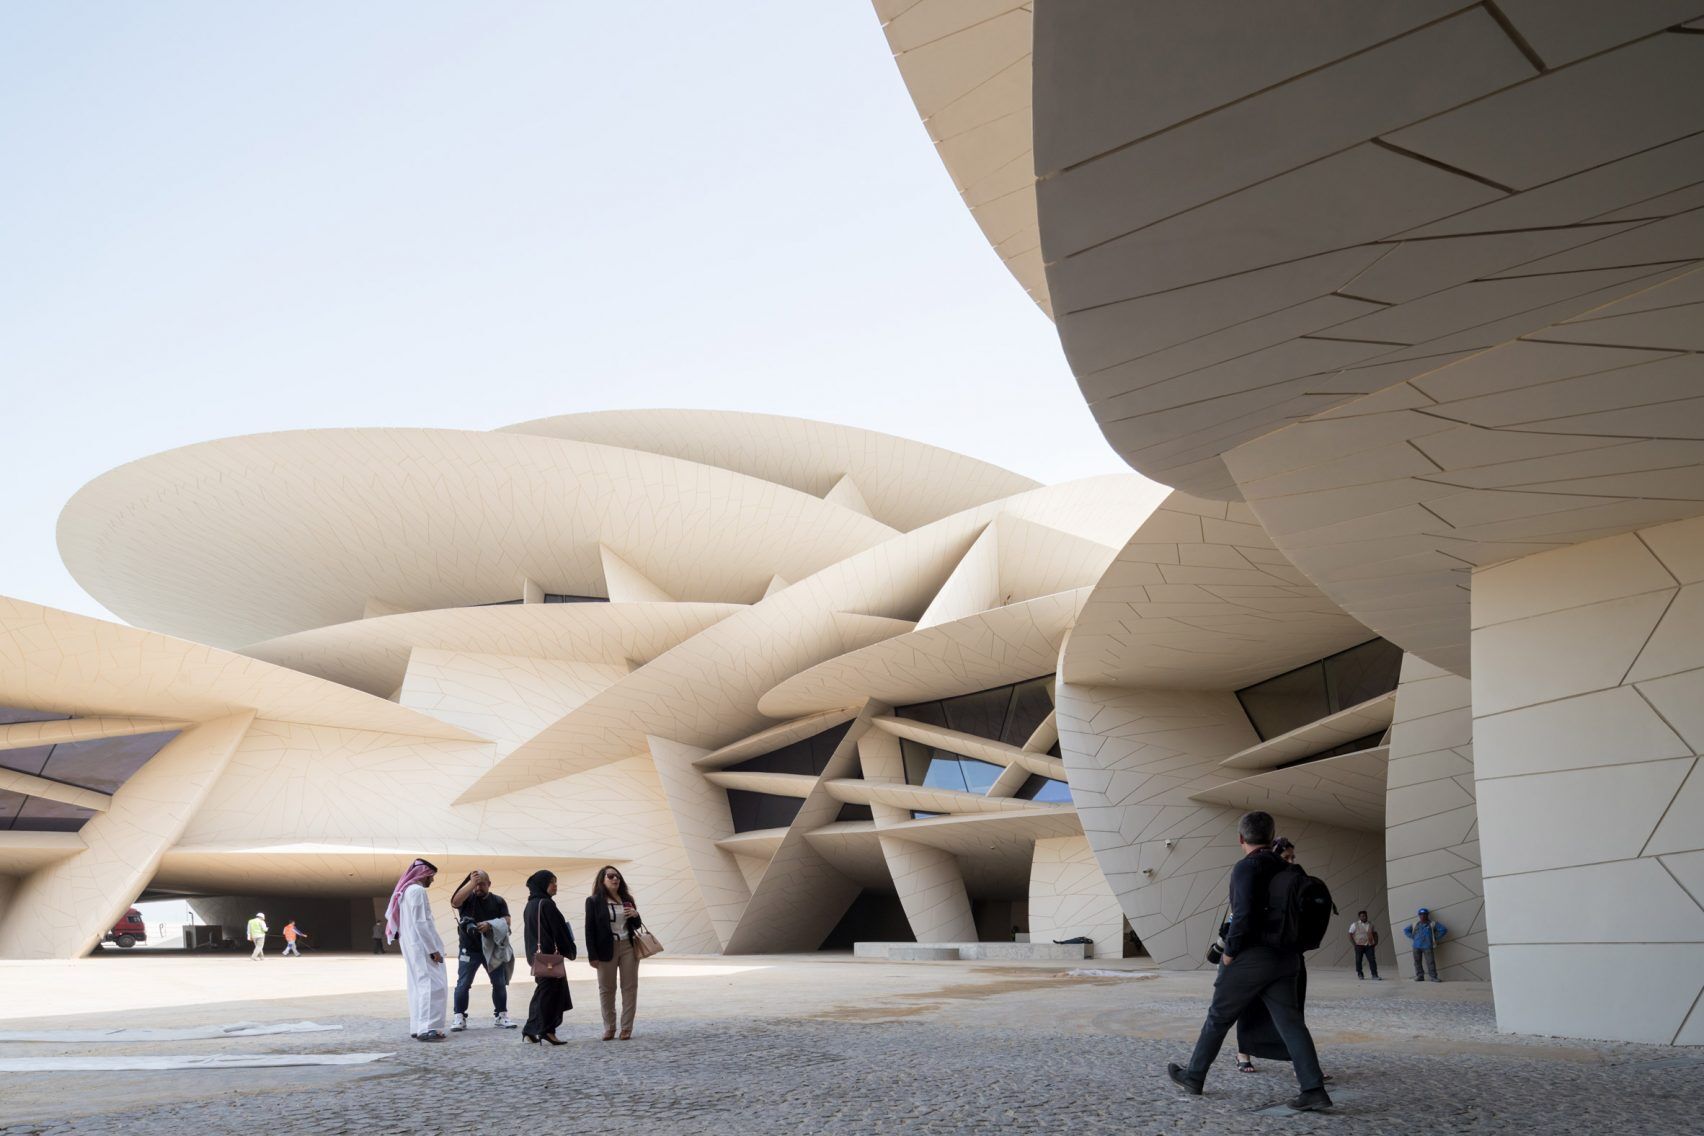  kiến trúc hoành tráng ở Qatar